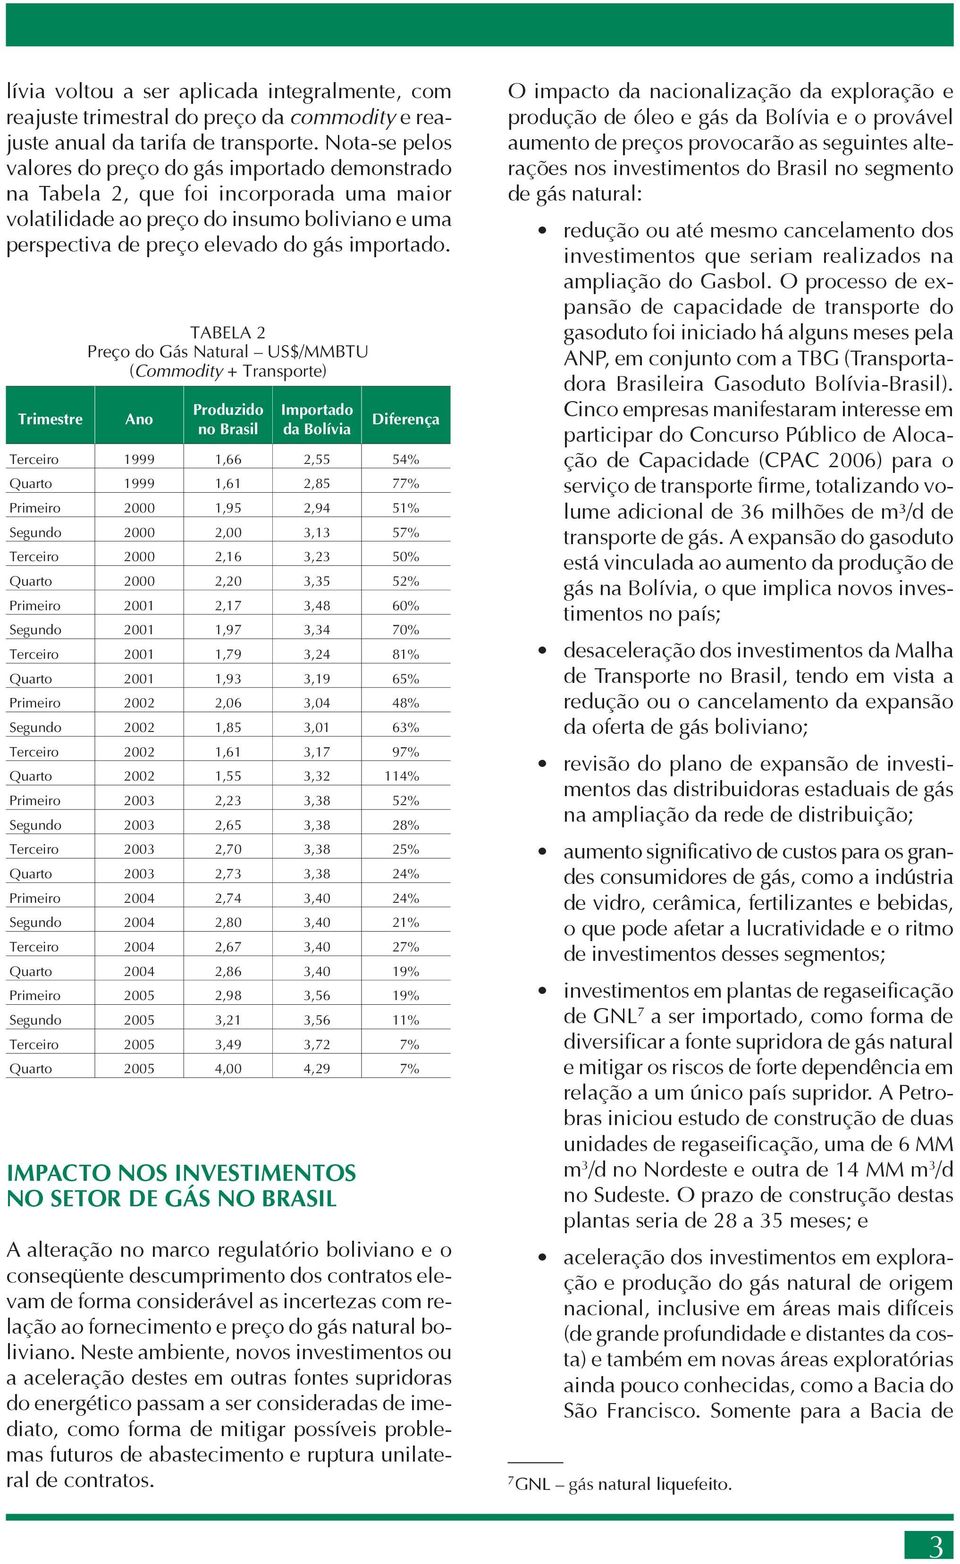 Trimestre TABELA 2 Preço do Gás Natural US$/MMBTU (Commodity + Transporte) Ano Produzido no Brasil Importado da Bolívia Diferença Terceiro 1999 1,66 2,55 54% Quarto 1999 1,61 2,85 77% Primeiro 2000